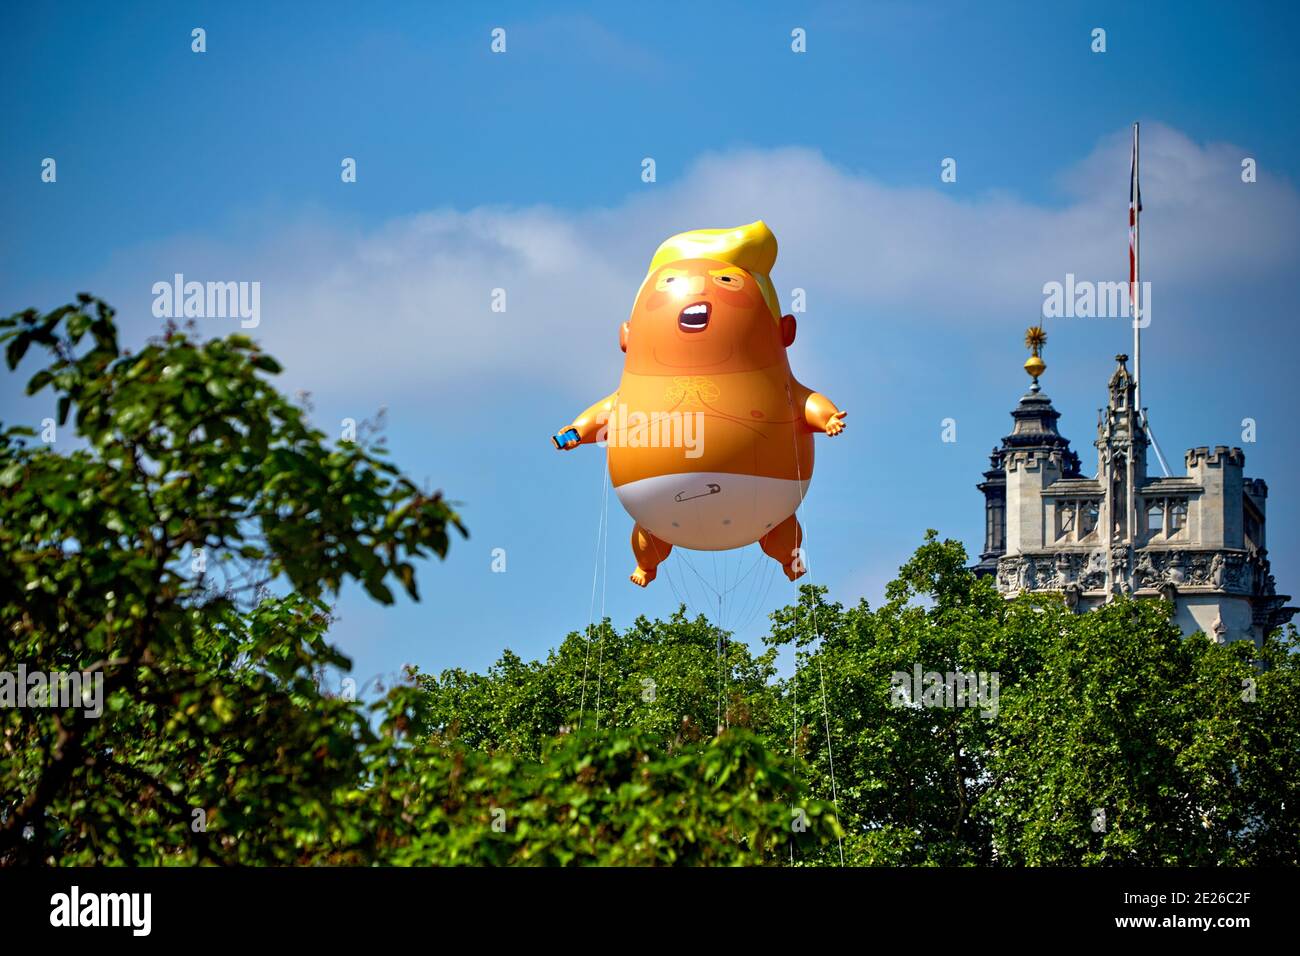 Trump Baby blimp vola in Piazza del Parlamento durante un funzionario Visita del Presidente degli Stati Uniti a Londra Foto Stock